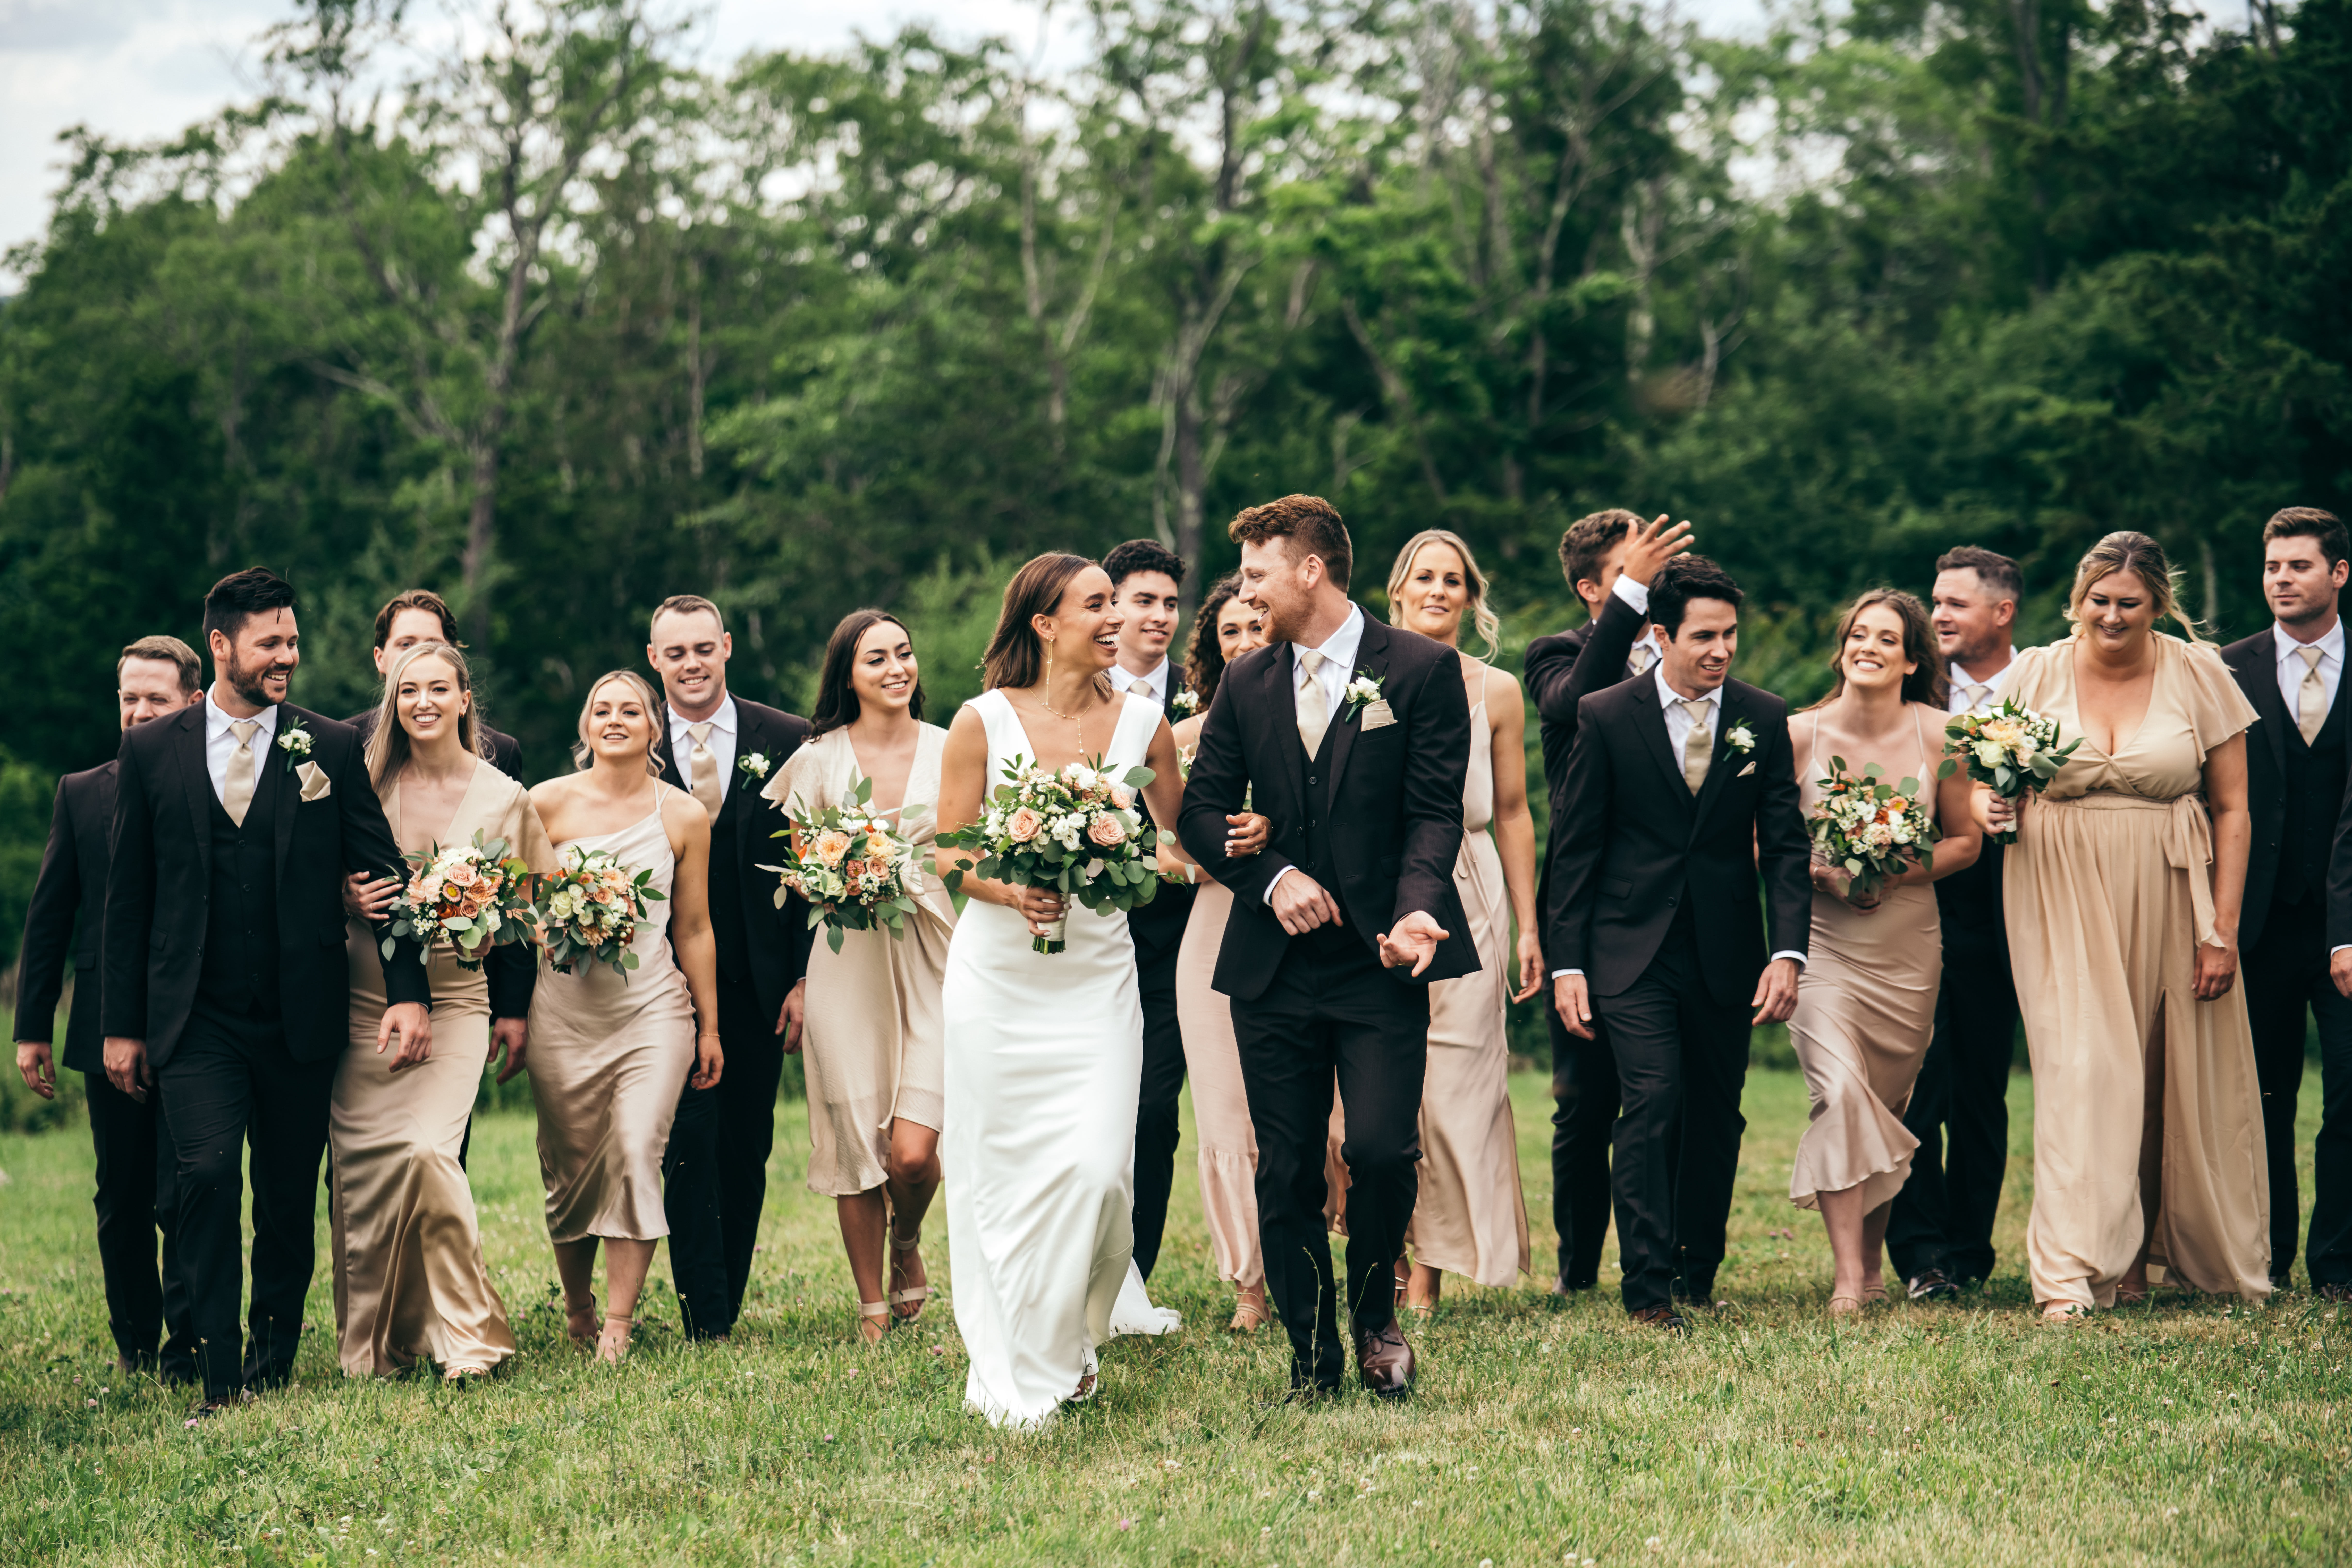 Meagan and Cullen Wedding 2022 - Just Bloom'd Weddings - Wedding Florist in Sudbury, MA